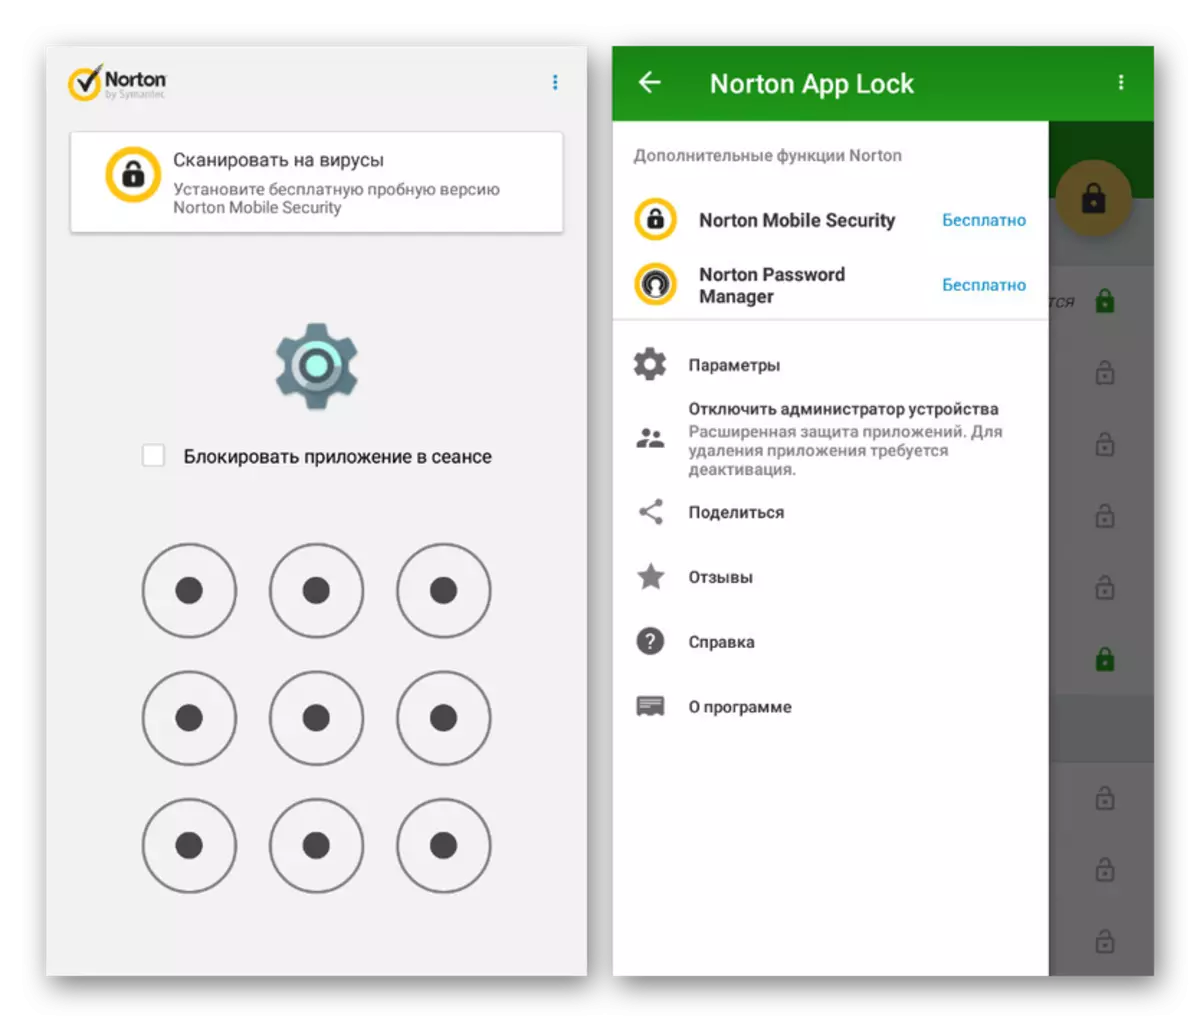 Confirmação no Norton App Lock no Android